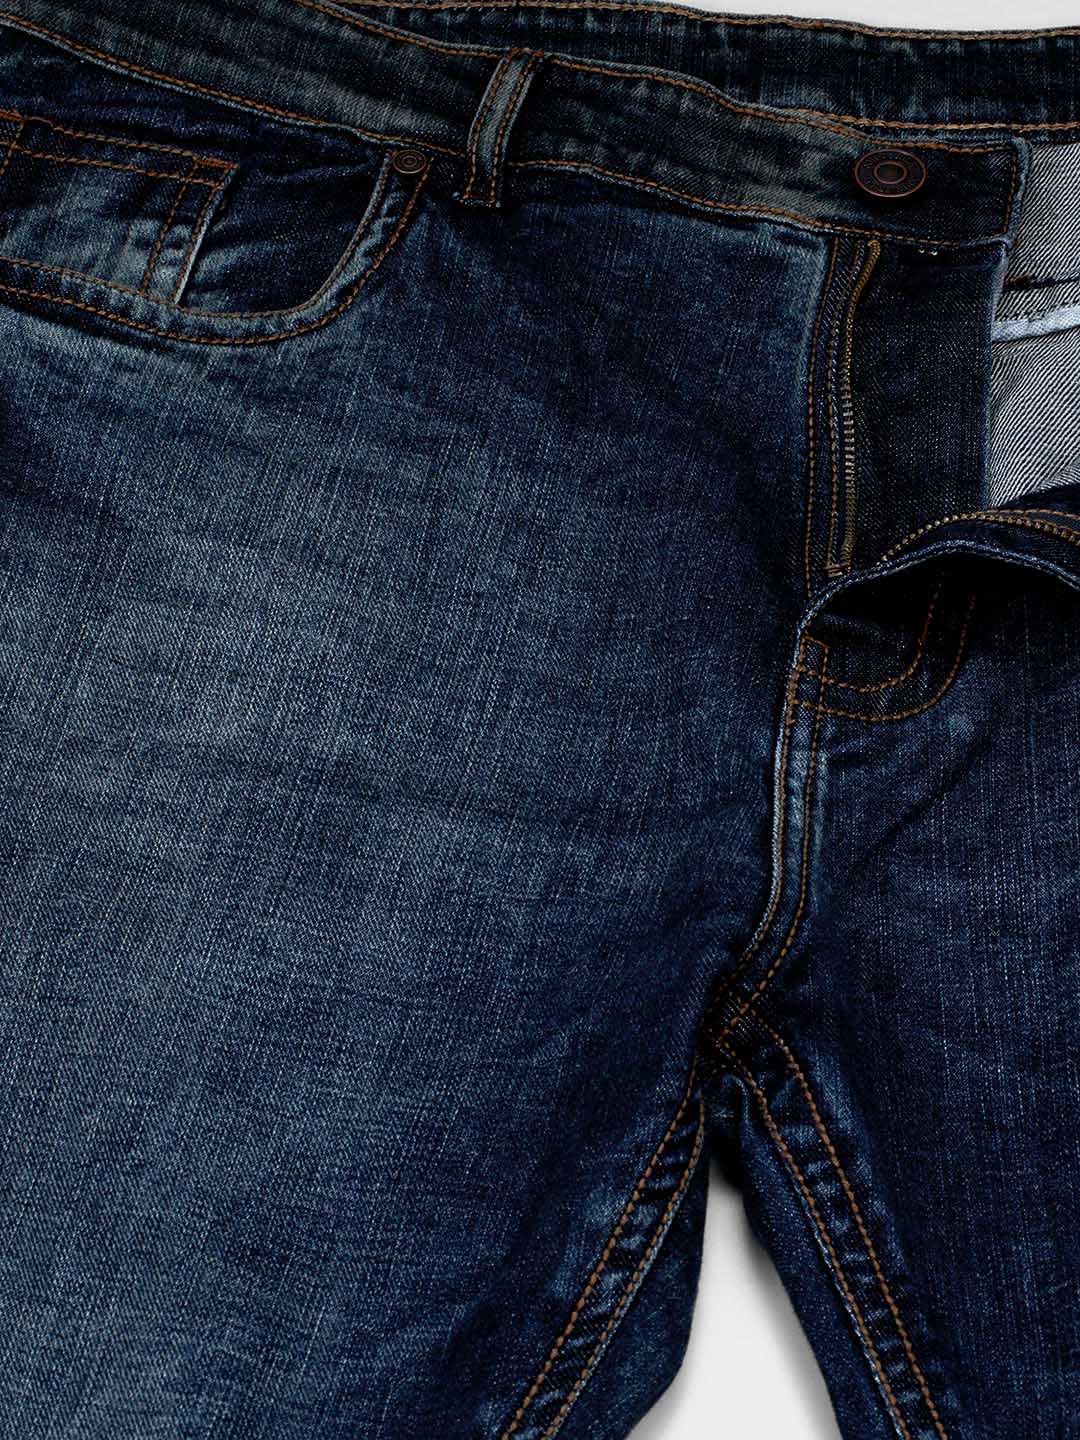 bottomwear/jeans/JPJ12120/jpj12120-2.jpg